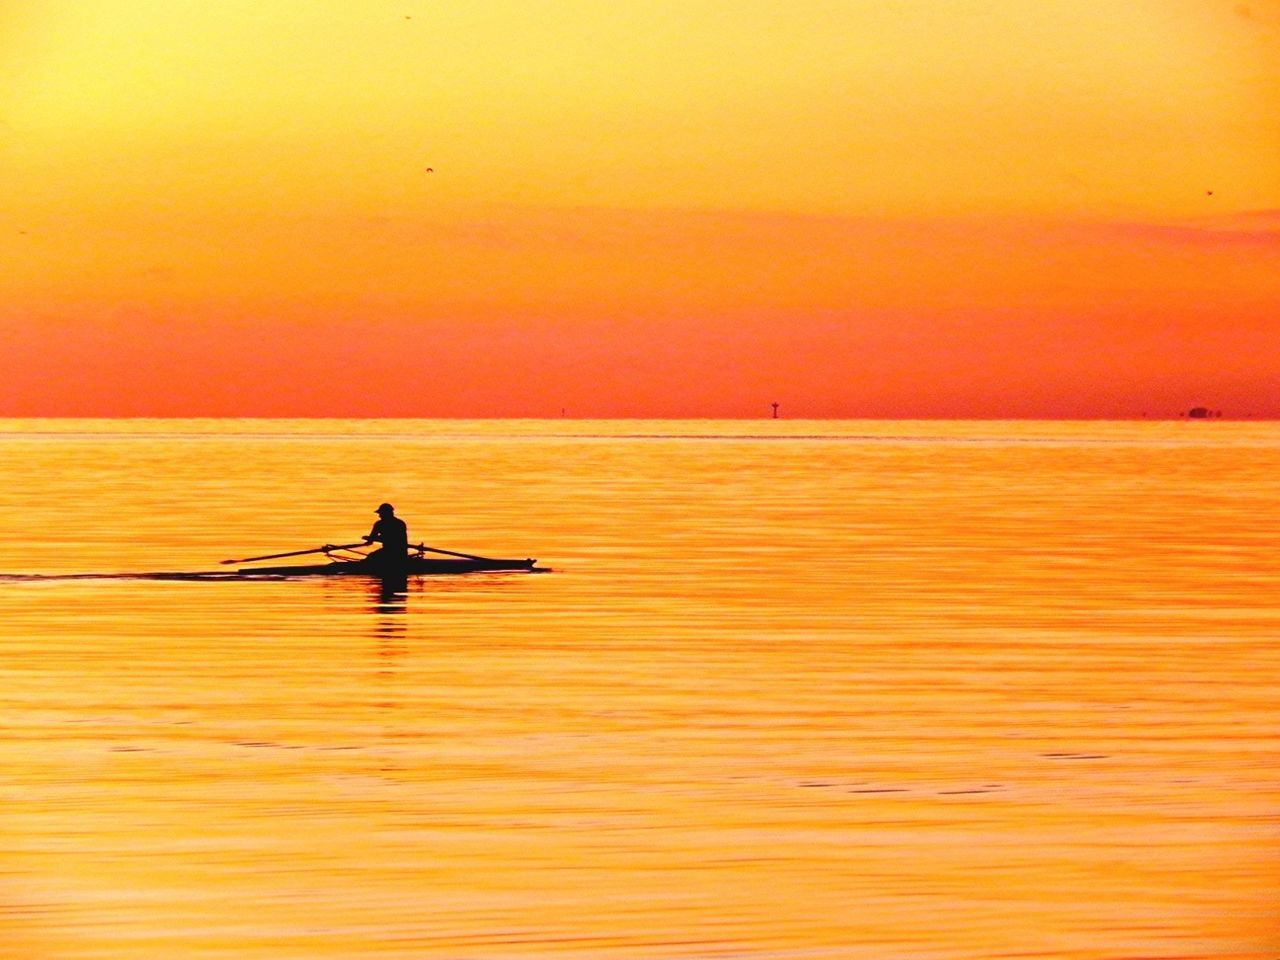 Silhouette man peddling boat in orange river